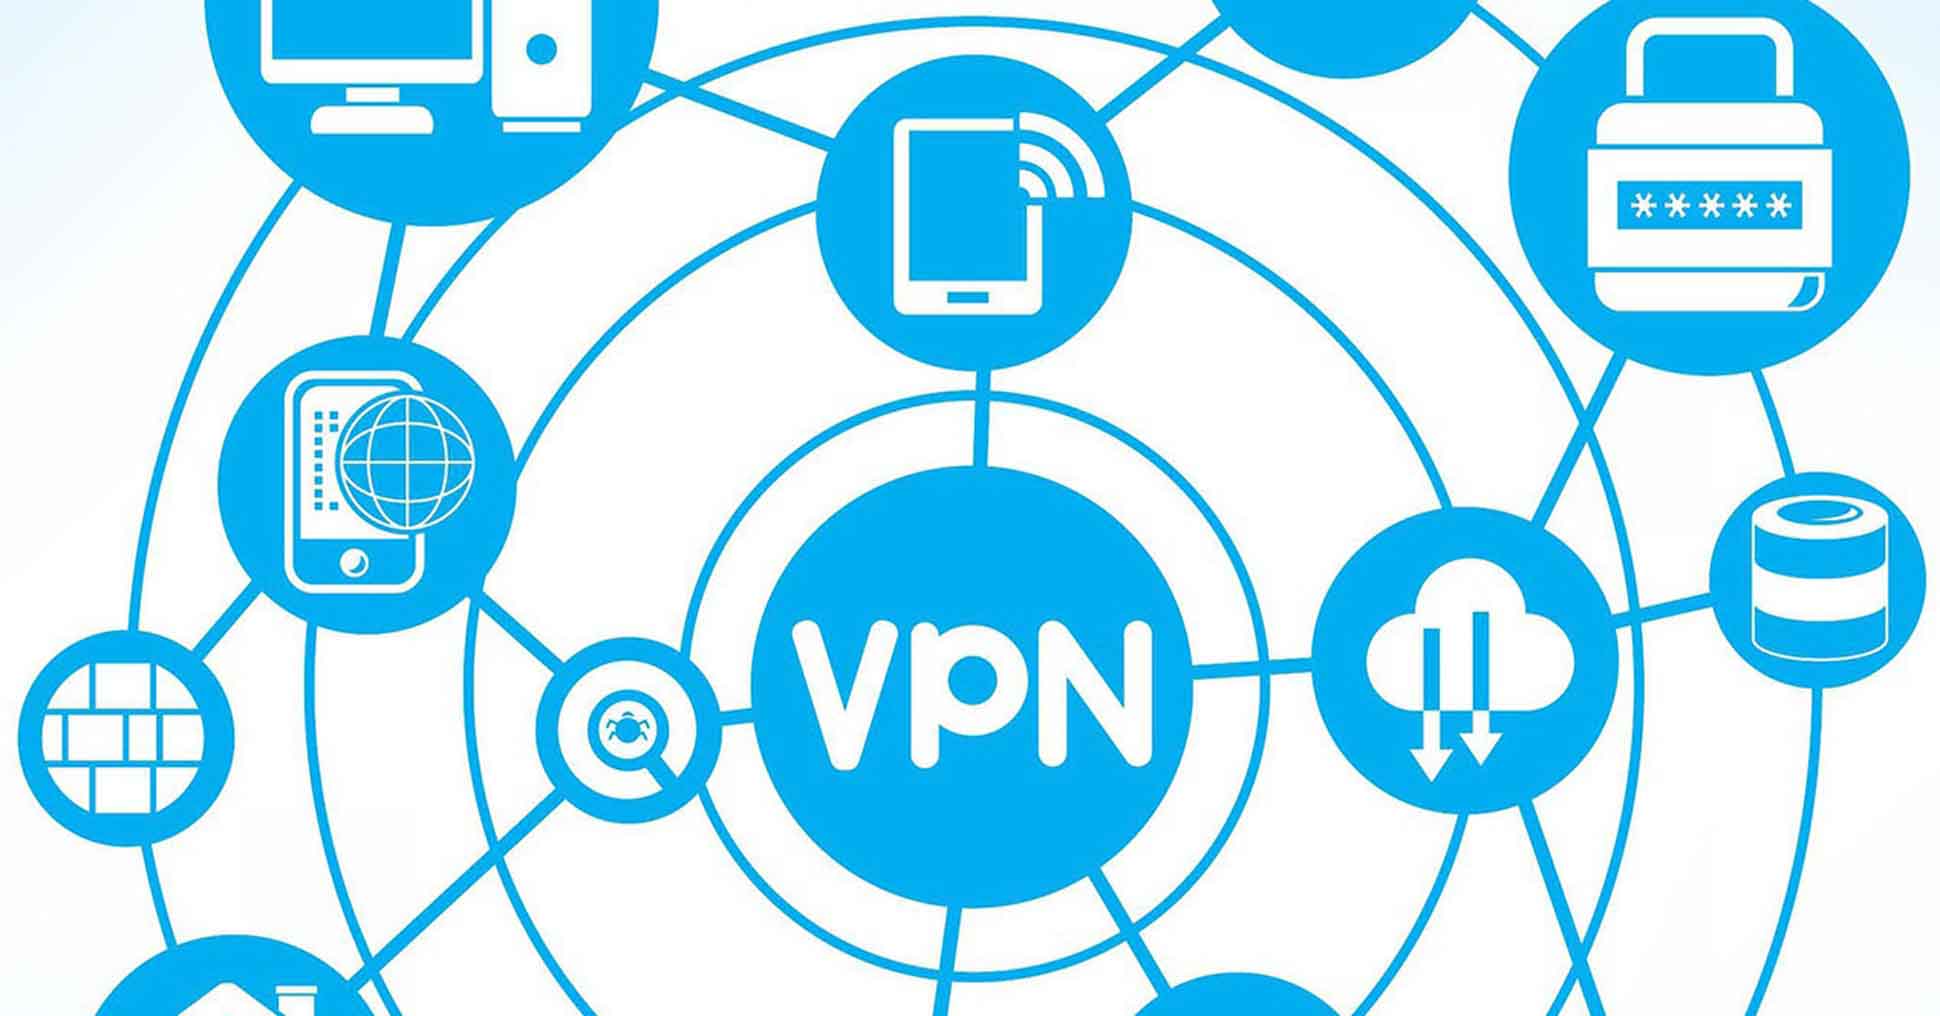  ¿Deberías usar una VPN? ¡Esto depende de 5 cosas!